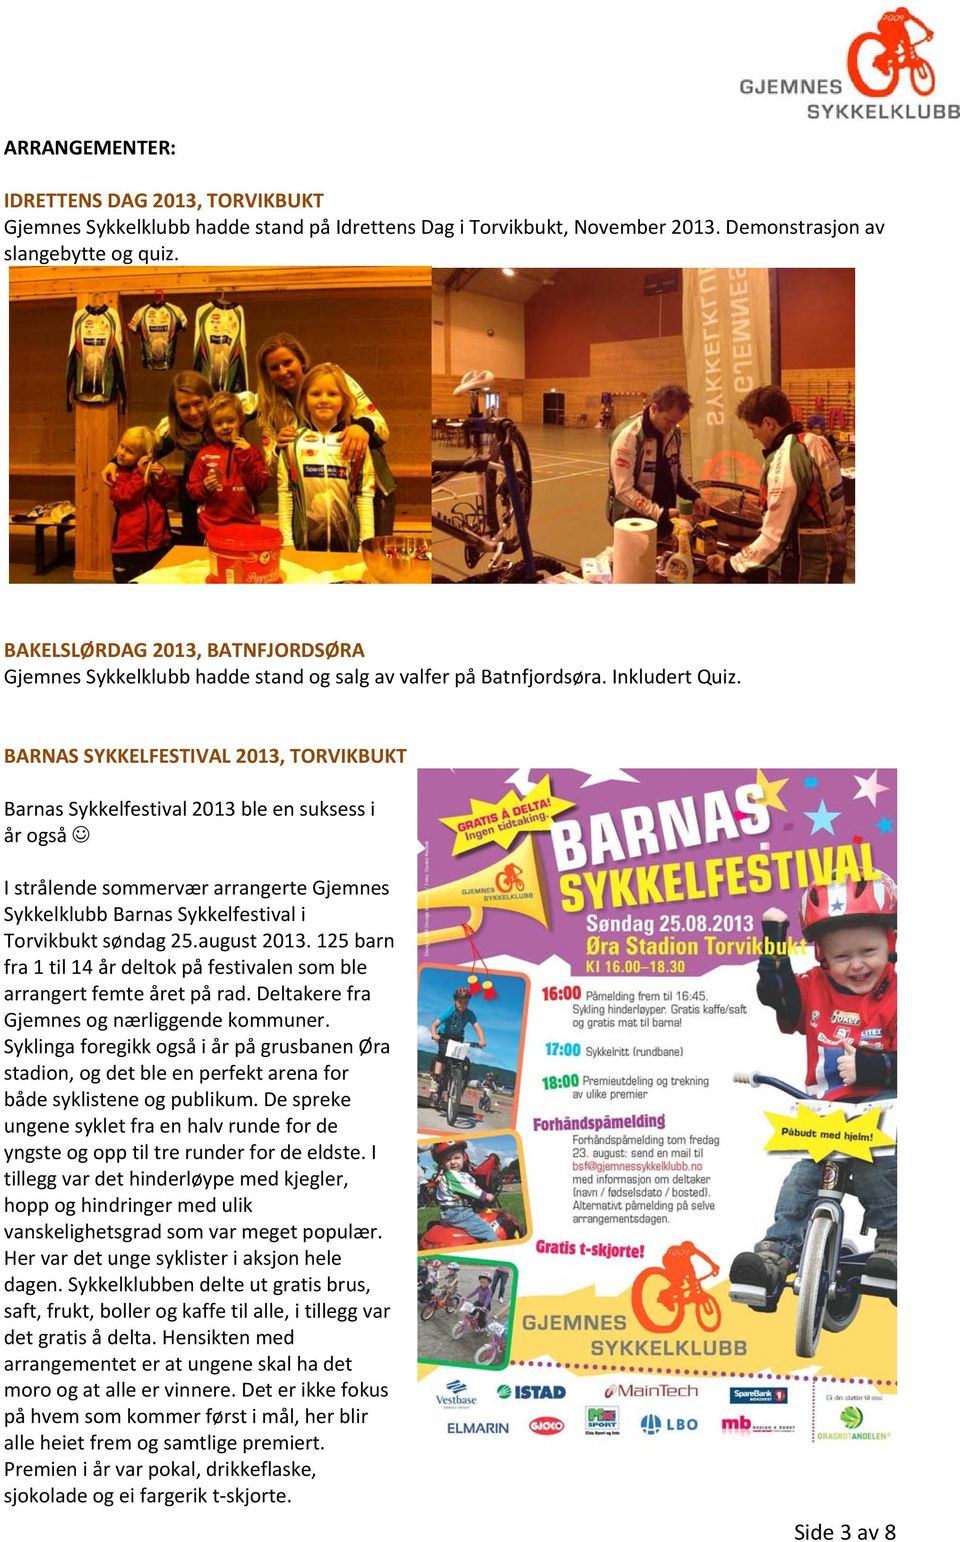 BARNAS SYKKELFESTIVAL 2013, TORVIKBUKT Barnas Sykkelfestival 2013 ble en suksess i år også I strålende sommervær arrangerte Gjemnes Sykkelklubb Barnas Sykkelfestival i Torvikbukt søndag 25.